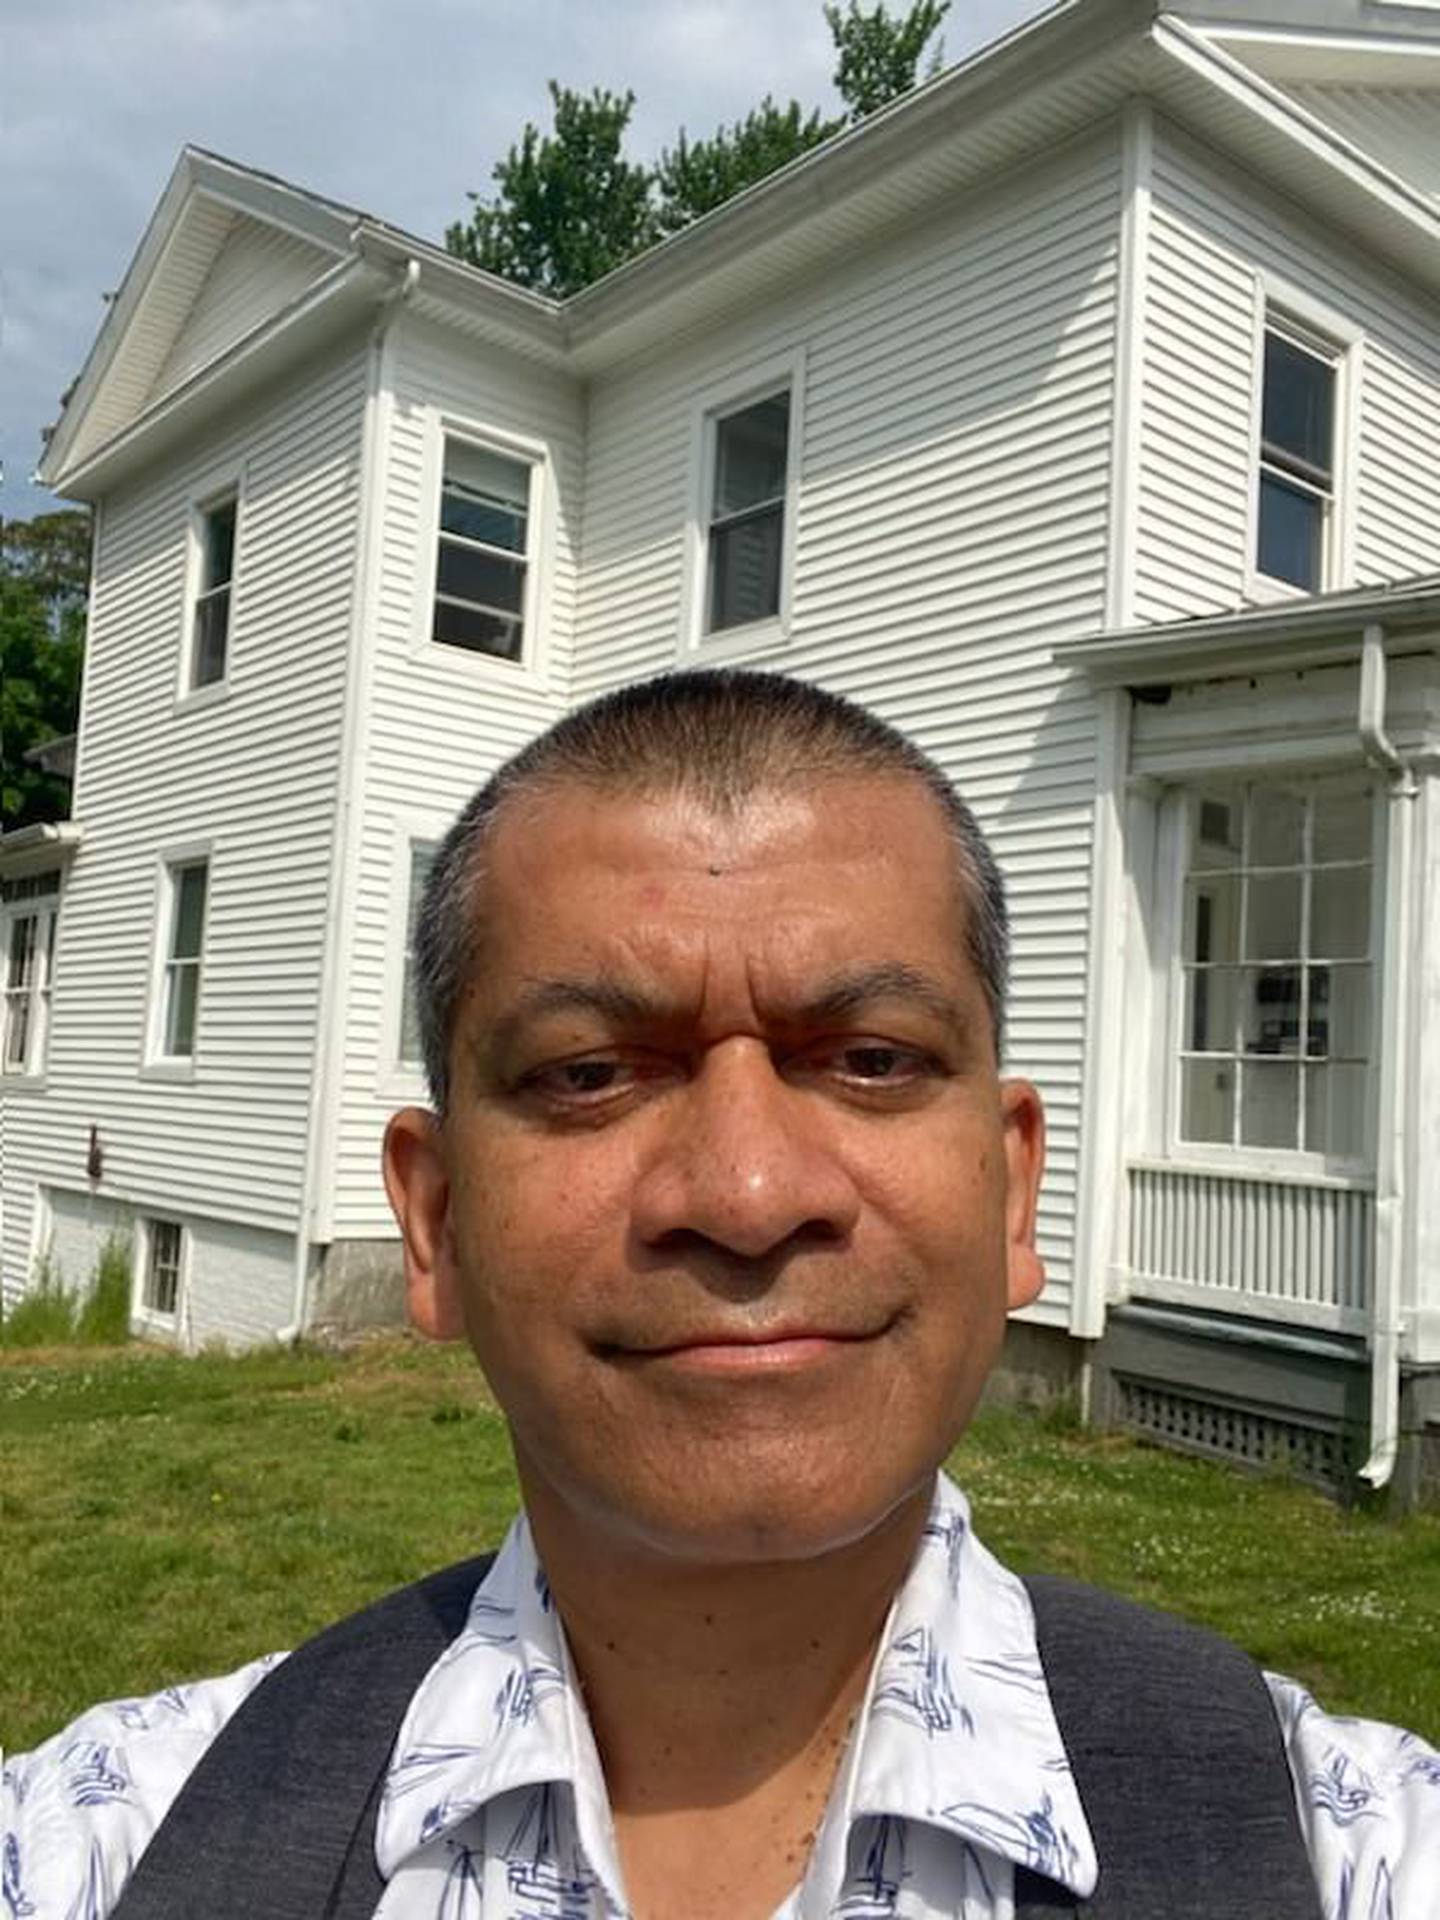 Pratip Dastidar devant son ancienne maison à Amherst, aux États-Unis.  Gé.  Pratip était la personne la plus intelligente de ma tranche d'âge que j'aie jamais rencontrée et a eu une énorme influence sur ma vie et ma carrière.  Hussein Ibis